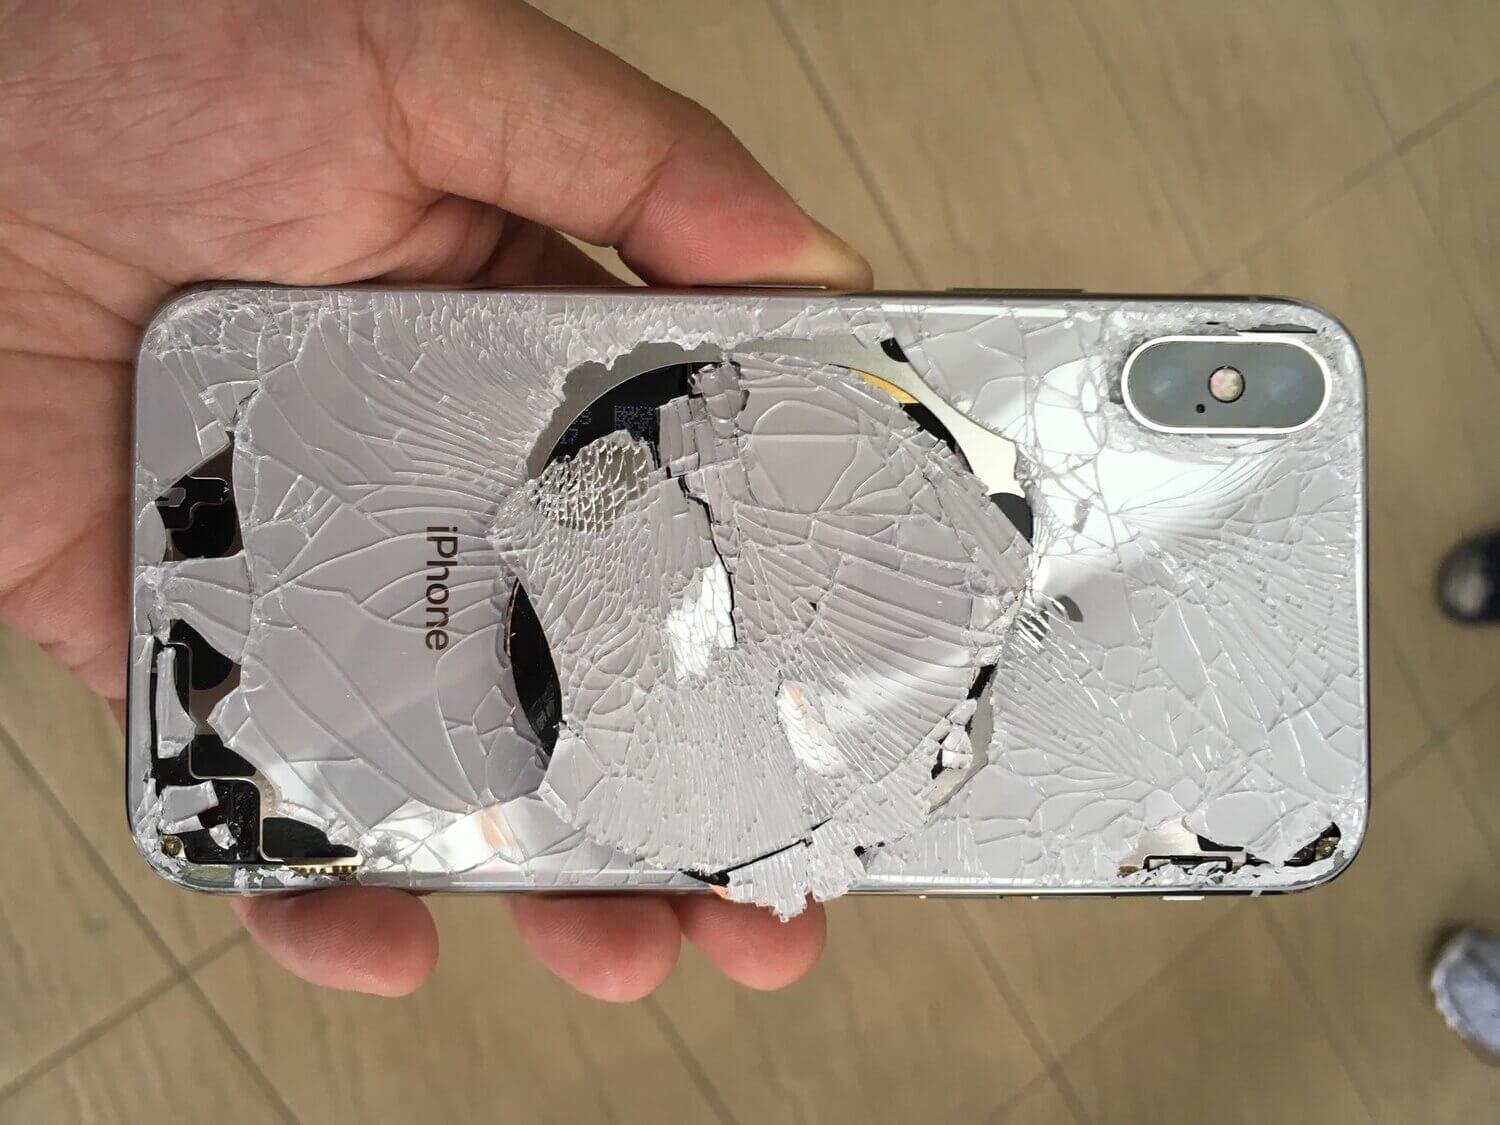 uBrokeiT iPhone repair & iPad repair Los Angeles - screen repair starting  at $50